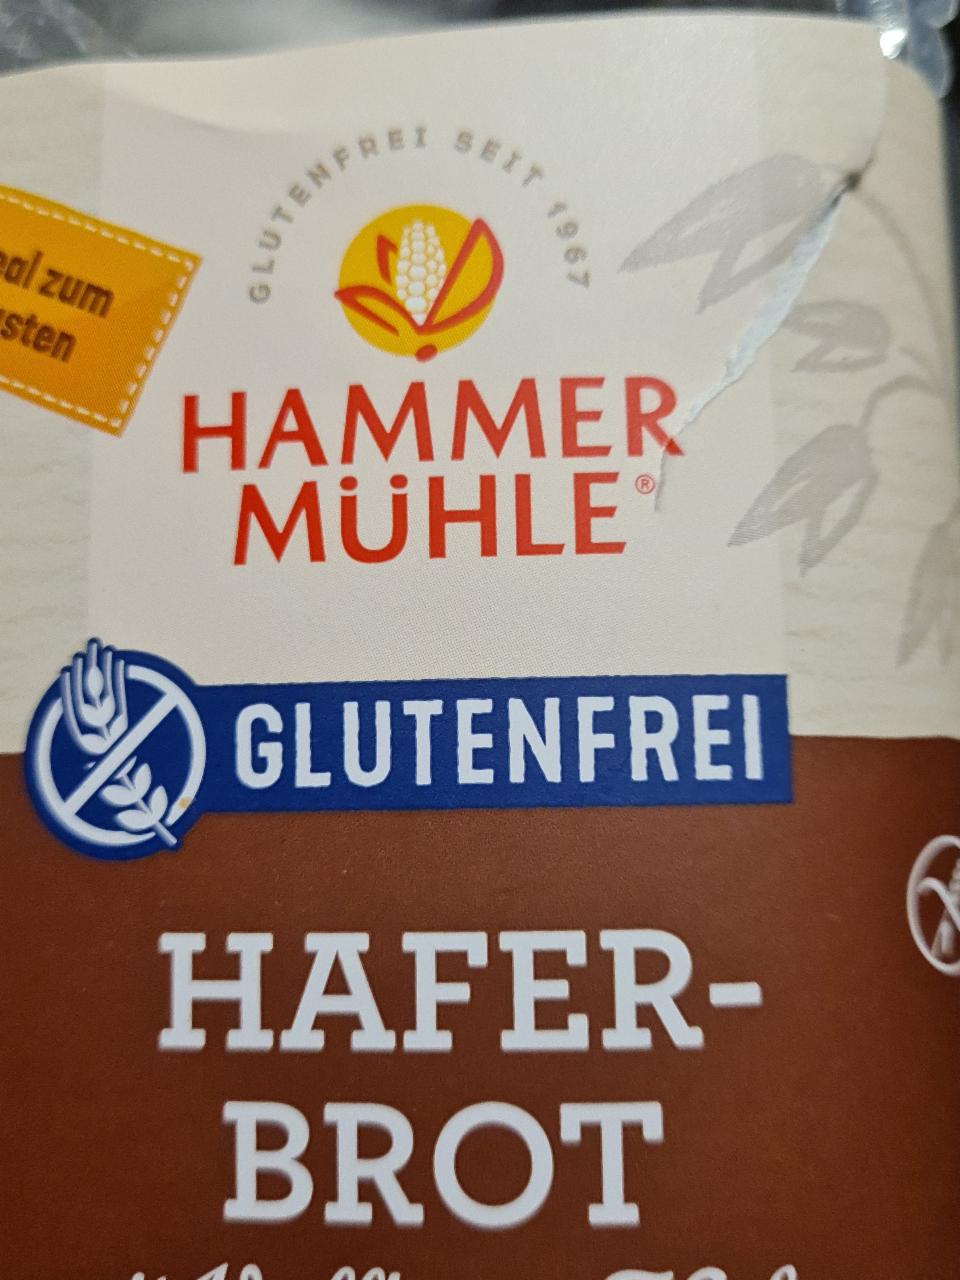 Fotografie - Hafer-brot mit Vollkorn-Hafer Hammer Mühle